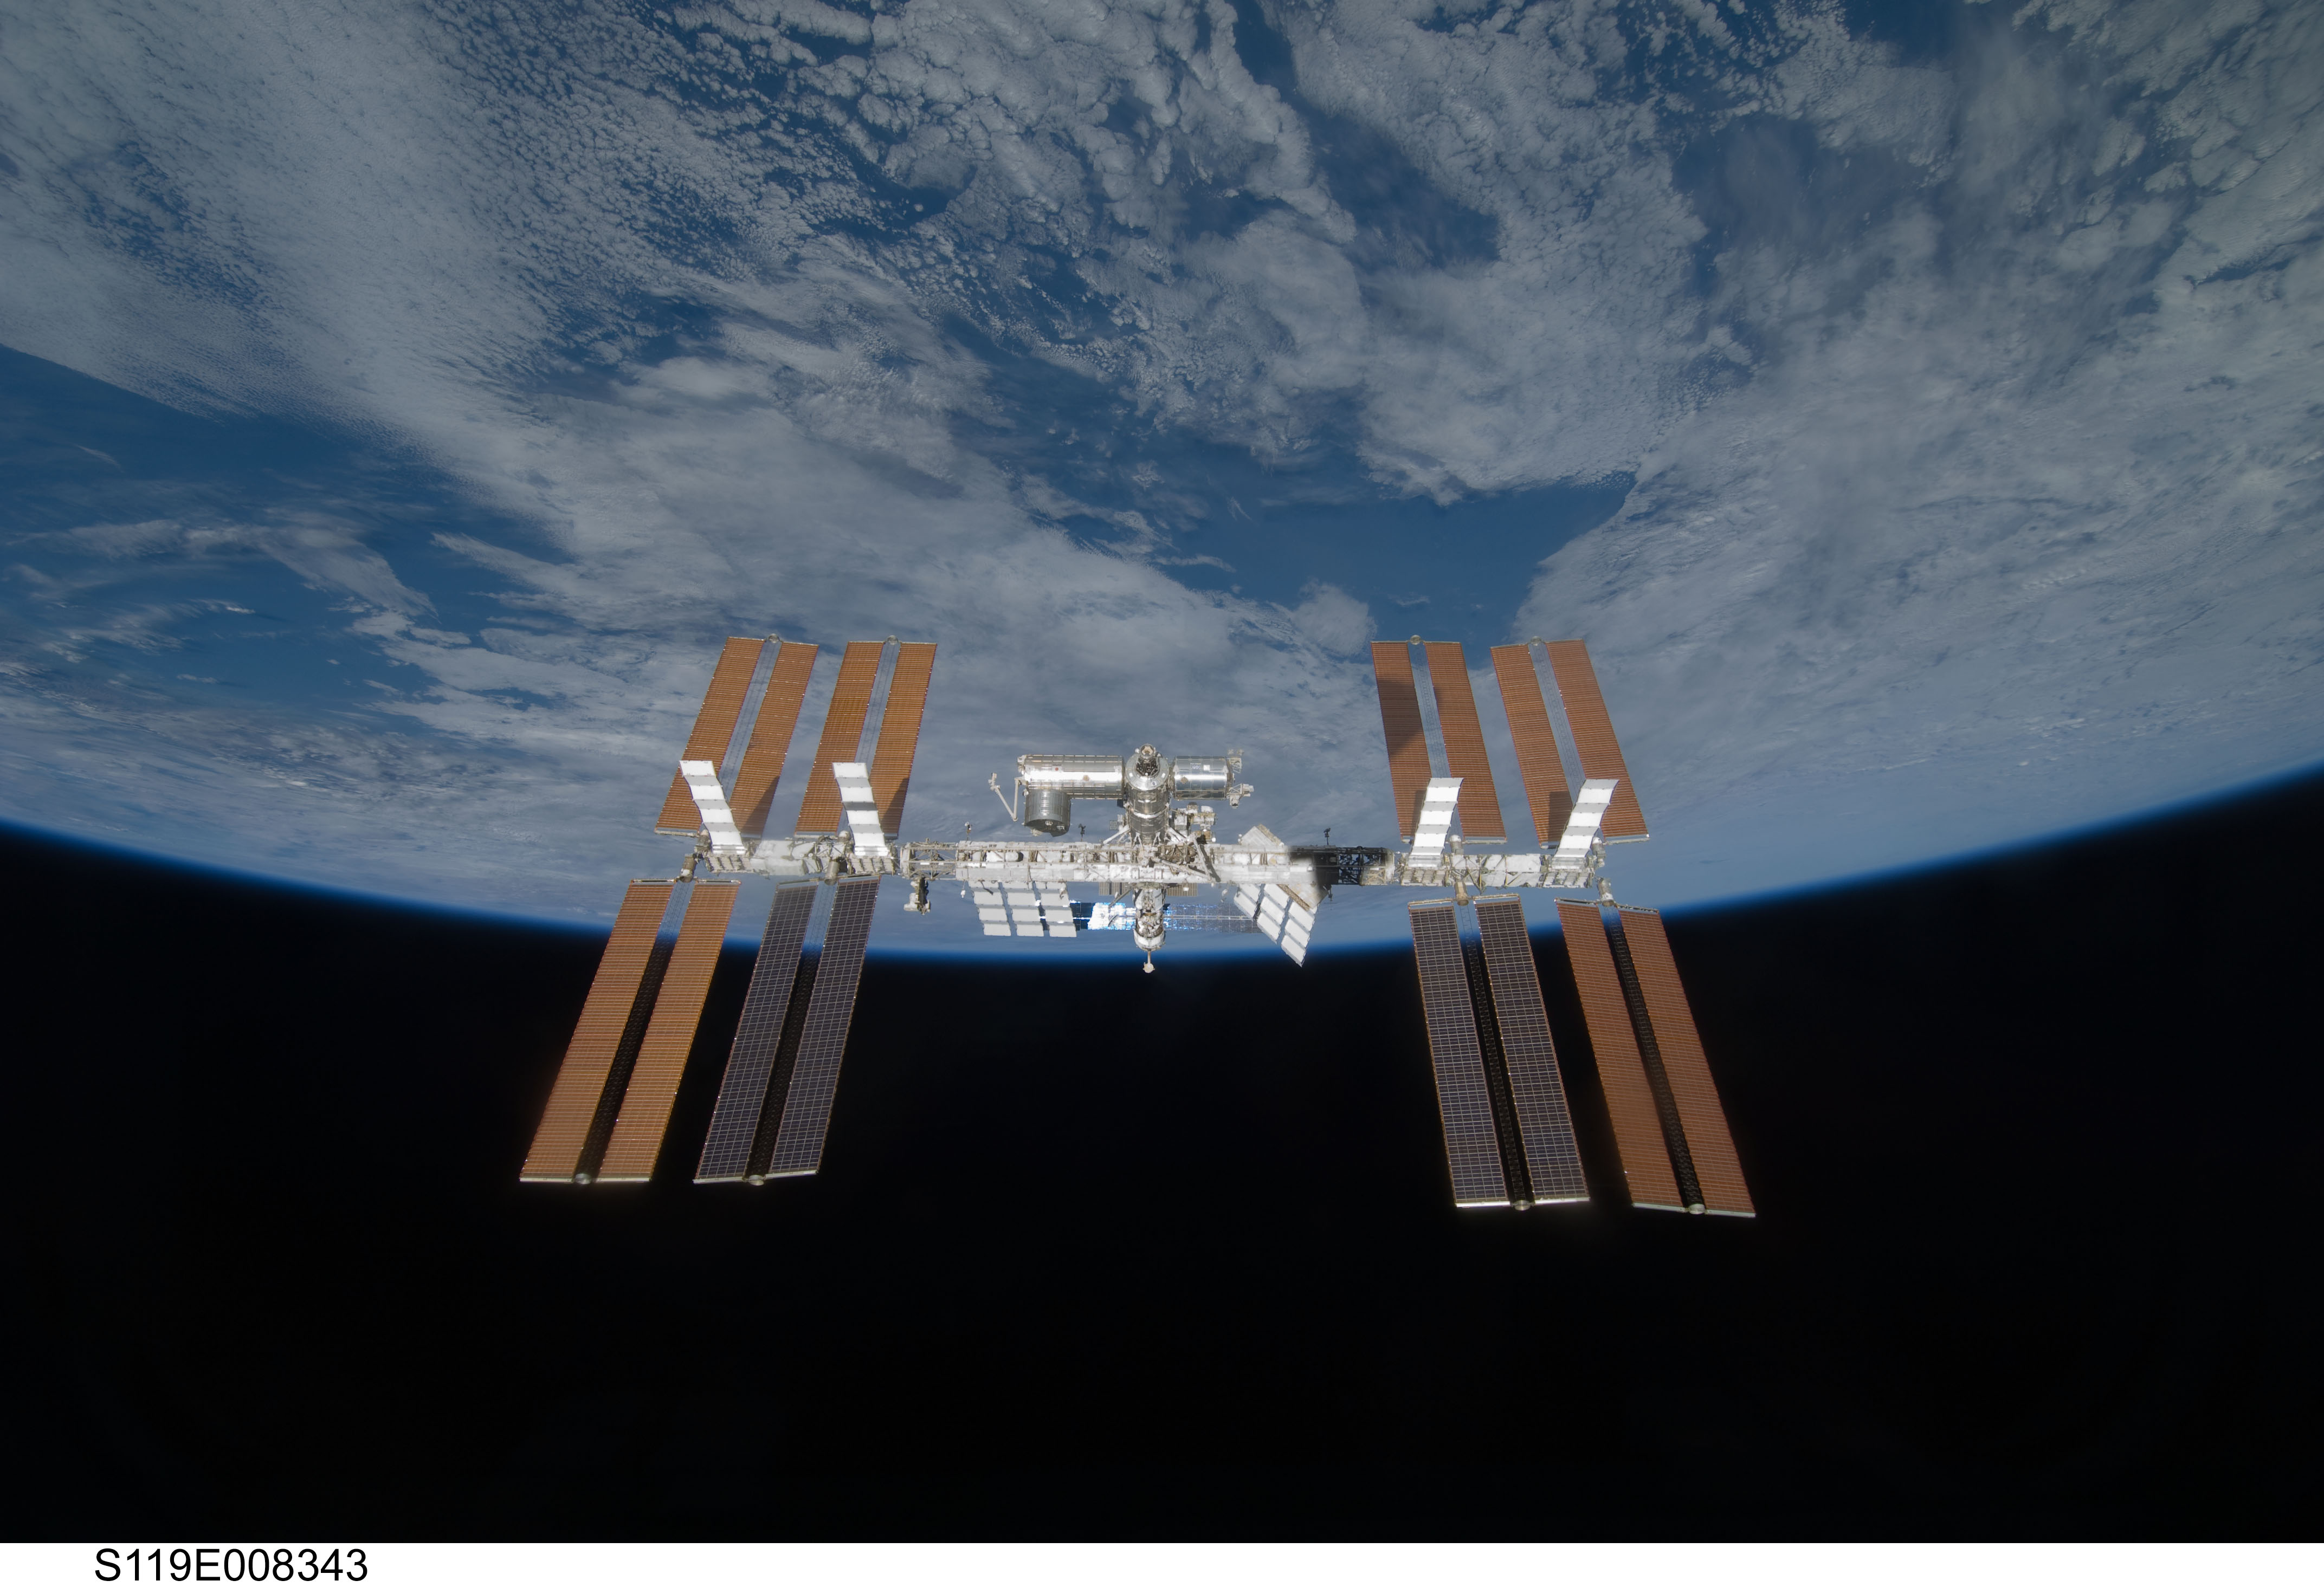 Veelgestelde vragen over het internationale ruimtestation